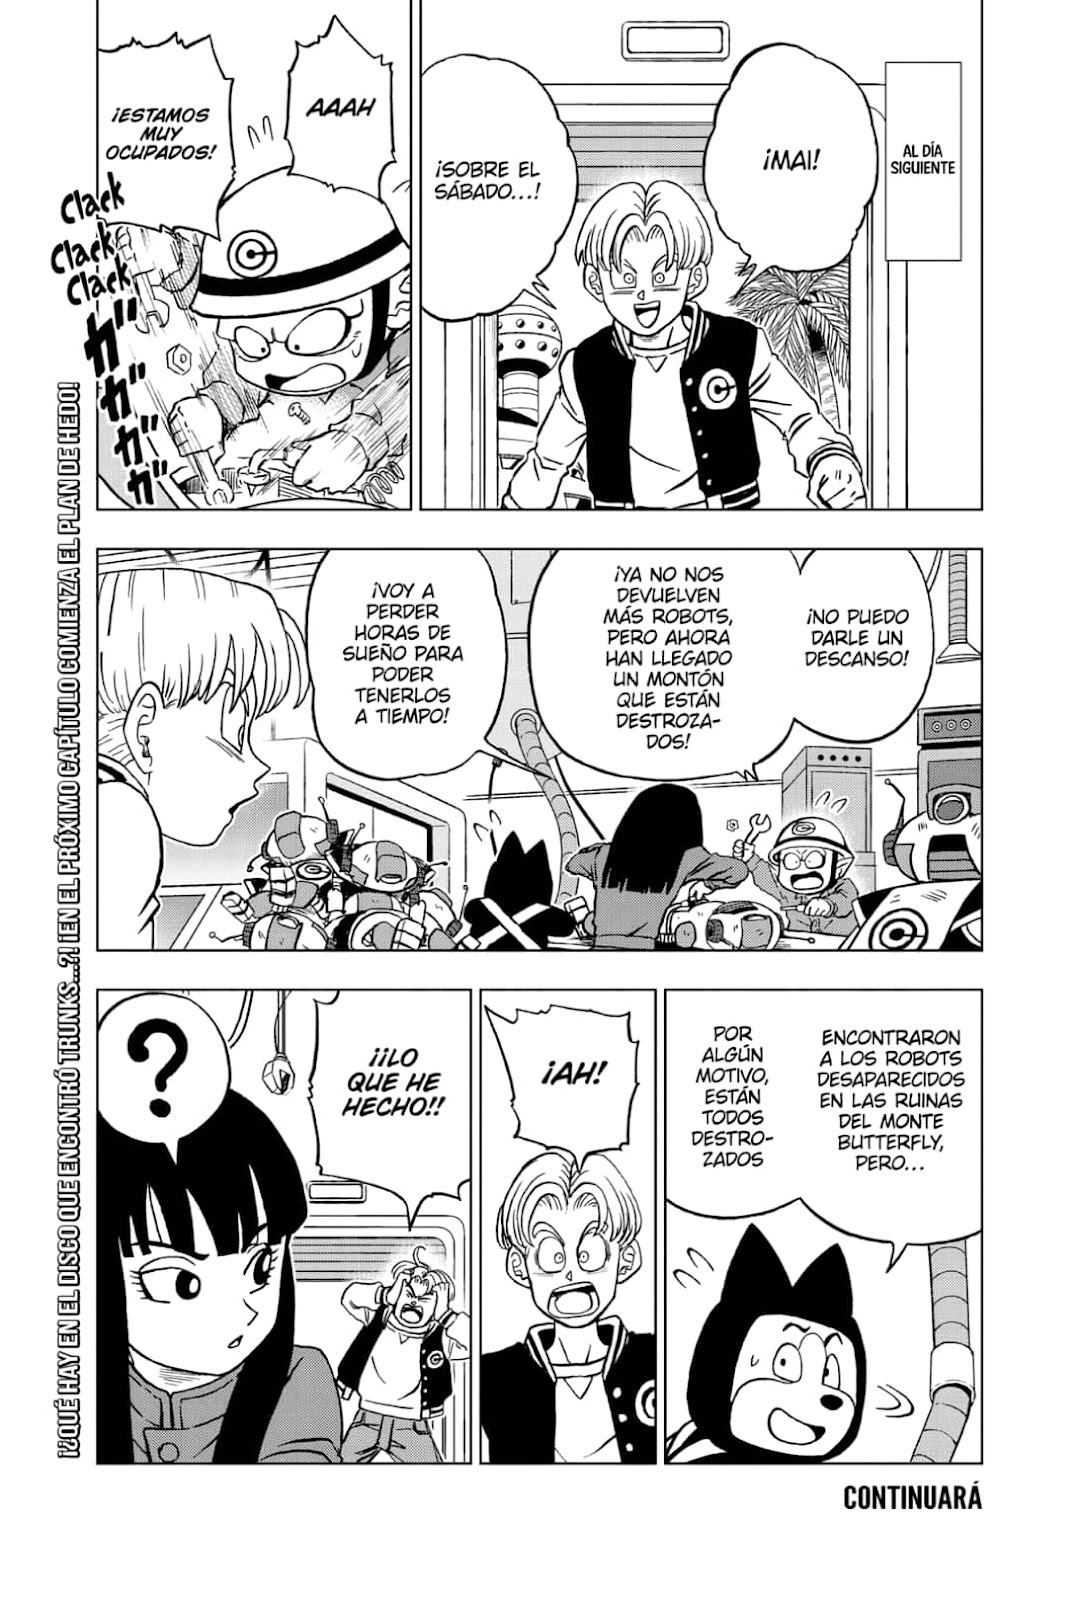 Dragon Ball Super Manga 88-89. fejezet - Dragon Ball Magyarország